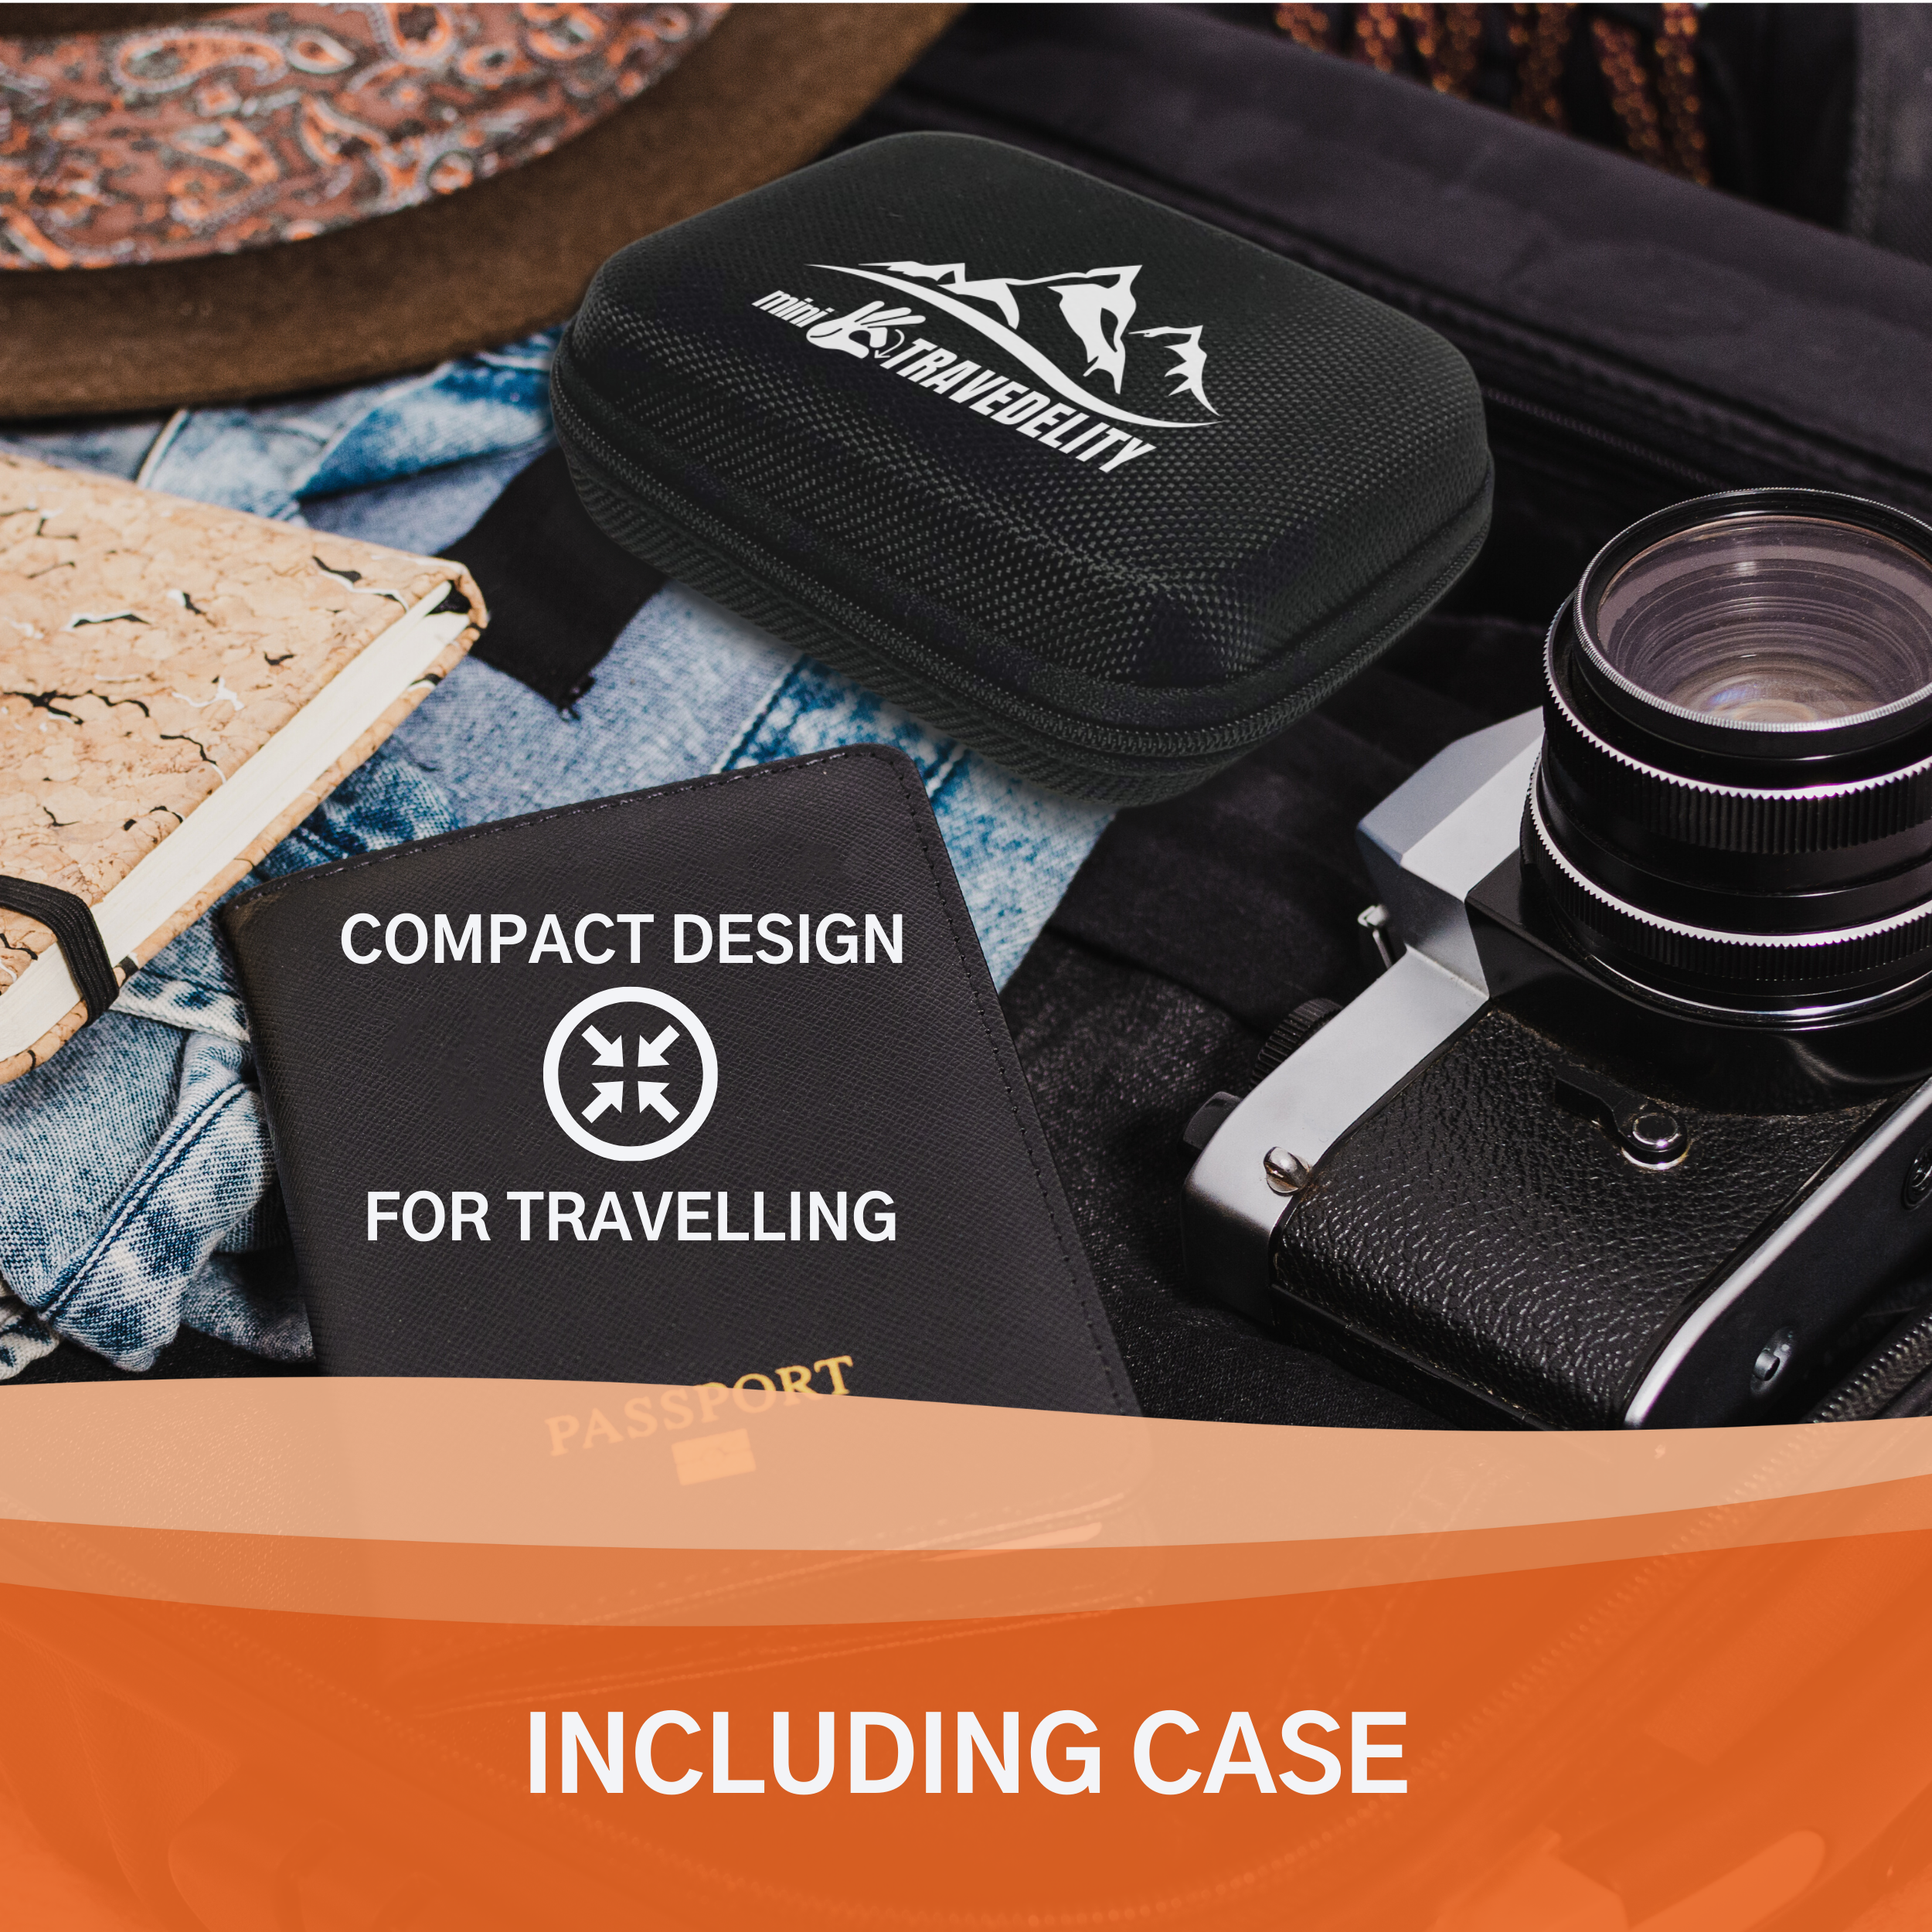 Mini-Travedelity, Portable Bidet Attachment with travel case